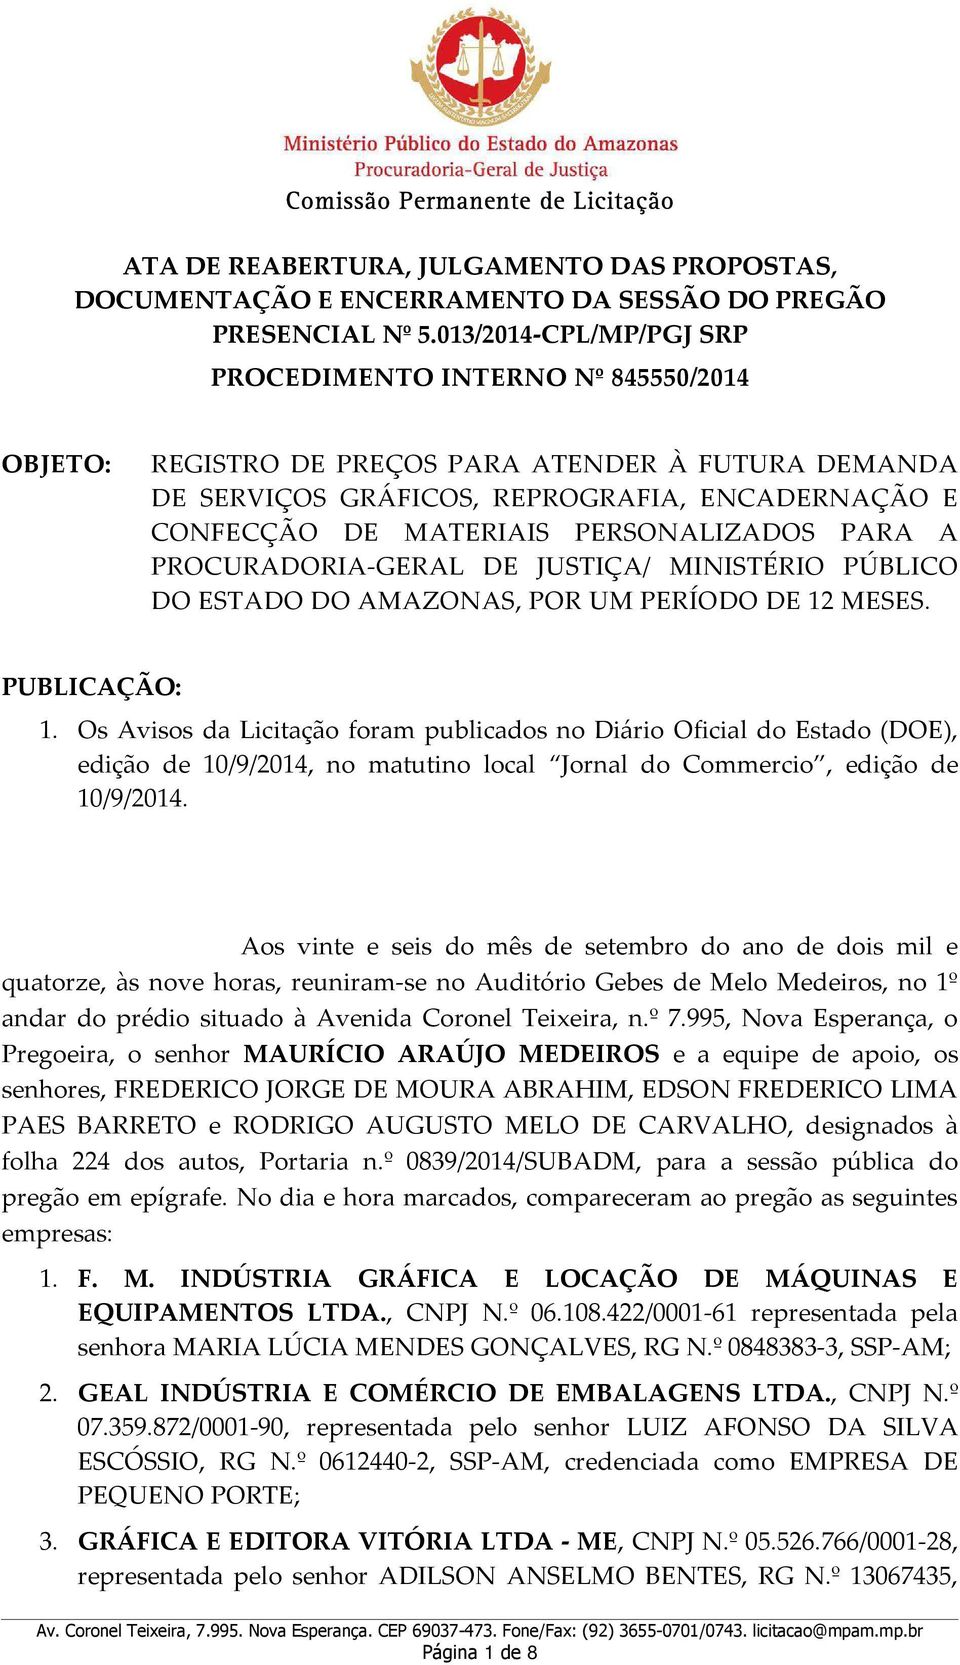 PERSONALIZADOS PARA A PROCURADORIA-GERAL DE JUSTIÇA/ MINISTÉRIO PÚBLICO DO ESTADO DO AMAZONAS, POR UM PERÍODO DE 12 MESES. PUBLICAÇÃO: 1.